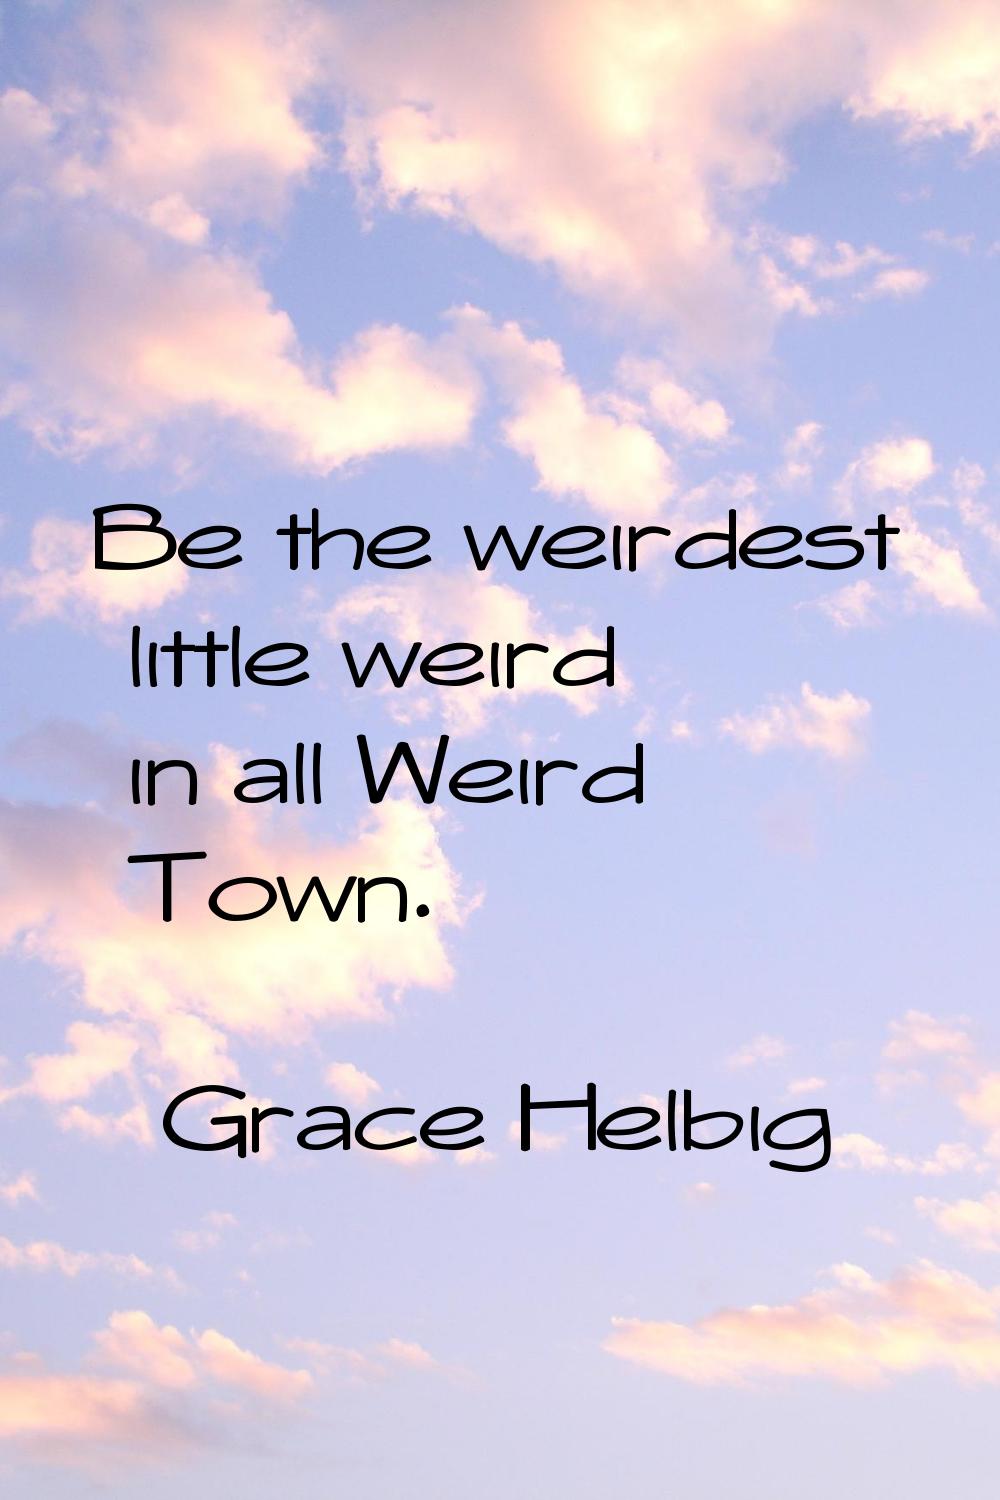 Be the weirdest little weird in all Weird Town.